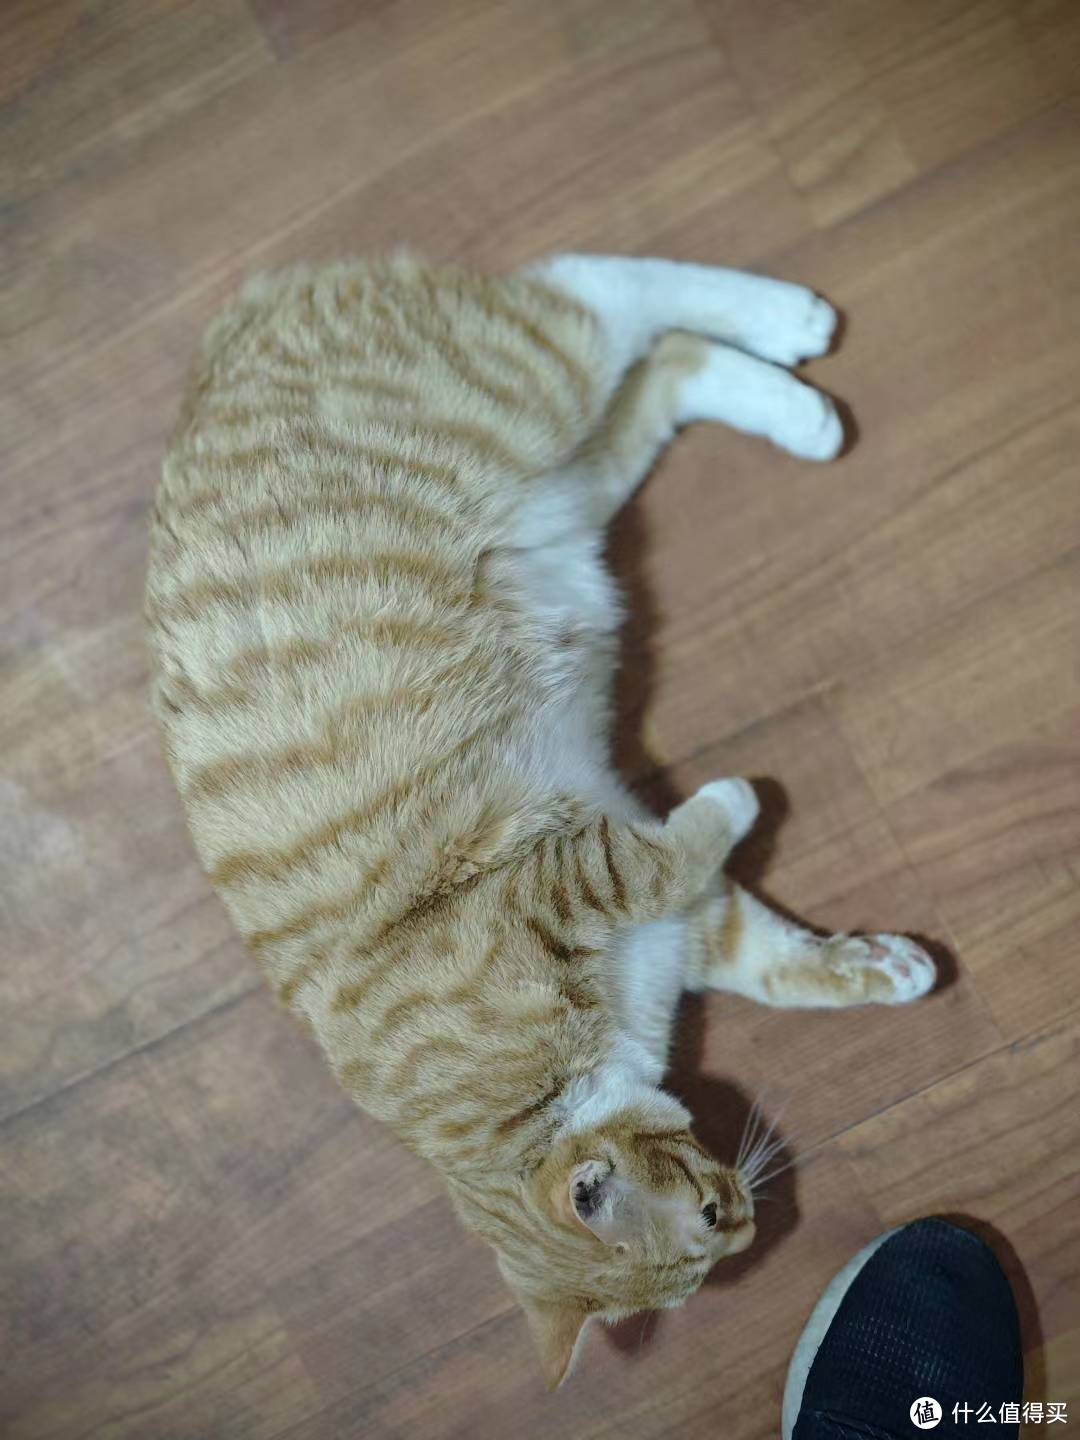 10月份救助的小橘猫 已经变成了中等体型的橘猫